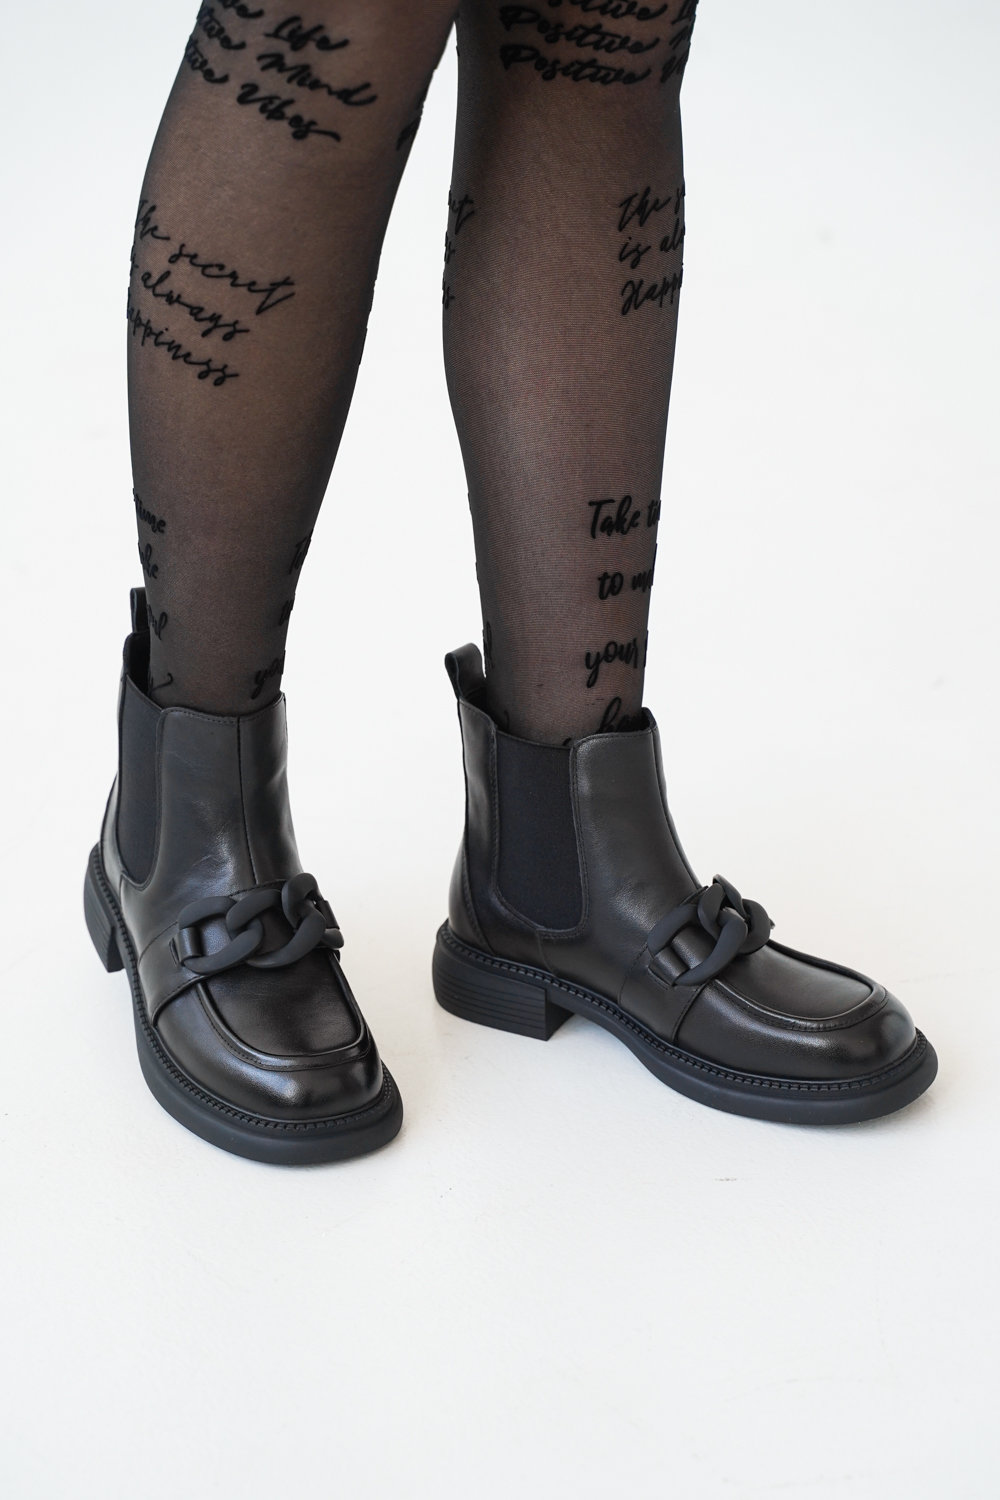 Ботинки женские, арт K-R-7005-15-15, натуральная кожа, цвет черн.